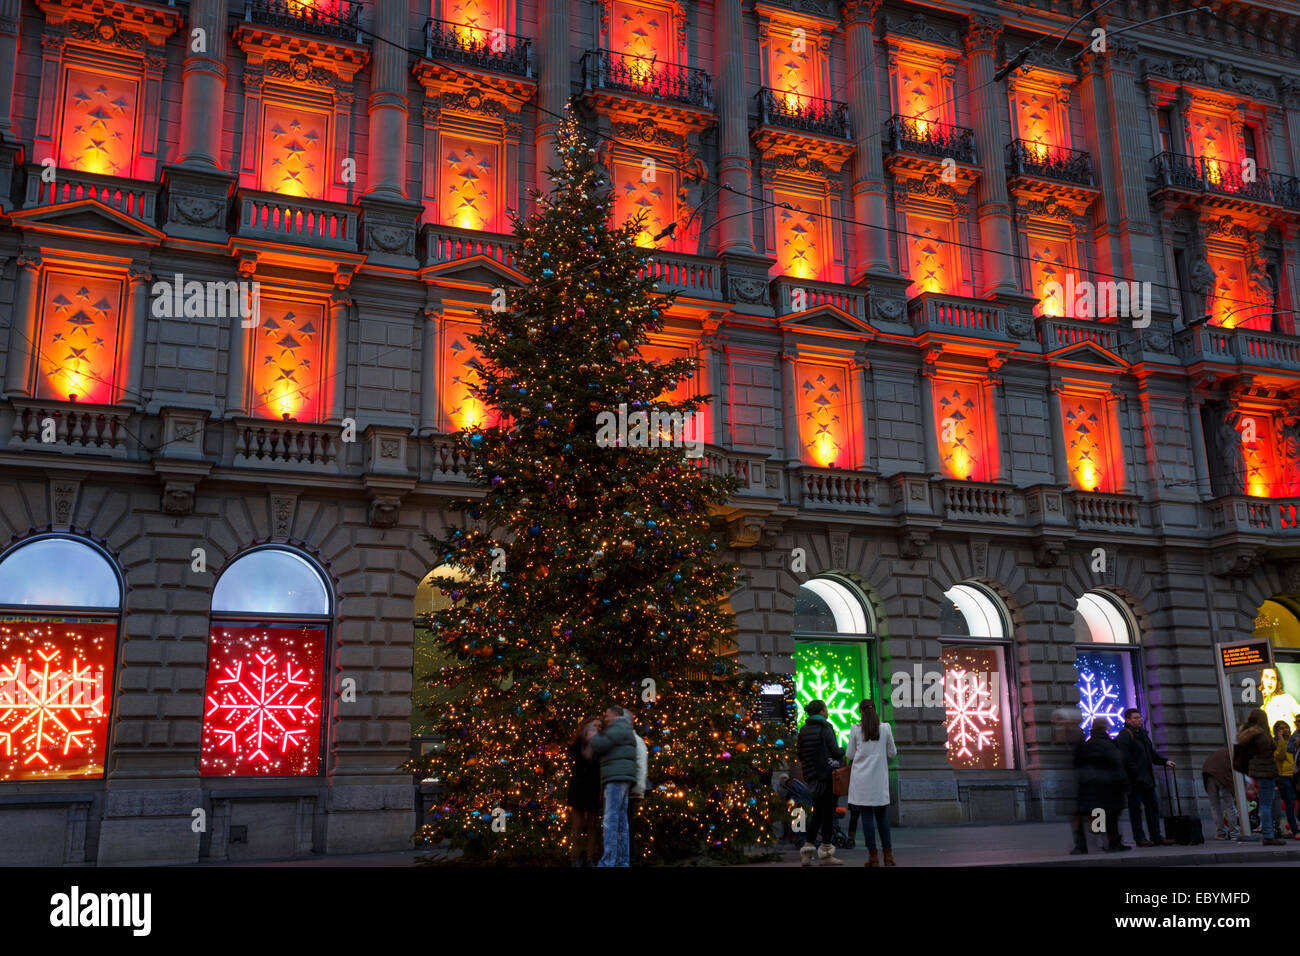 Weihnachts-Dekoration des Credit Suisse-Gebäudes am Paradeplatz, Zürich,  Schweiz Stockfotografie - Alamy